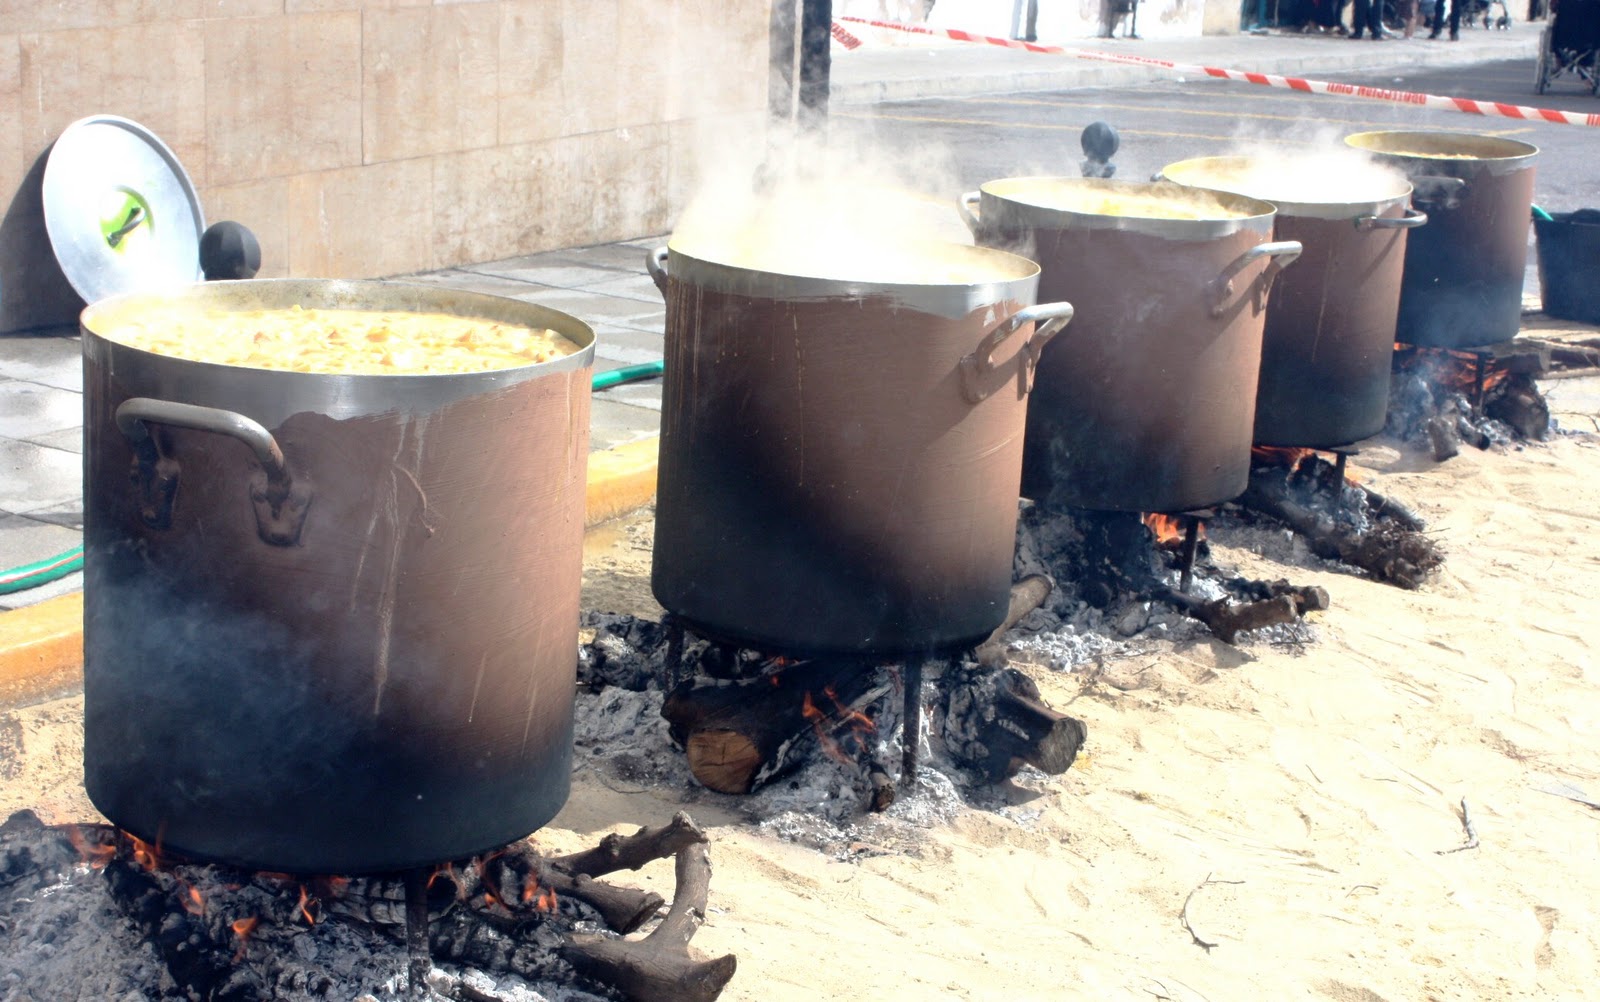 Valenciagastronomic: Arròs amb fesols i naps - Arroz con alubias y nabos (Traditional soupy rice